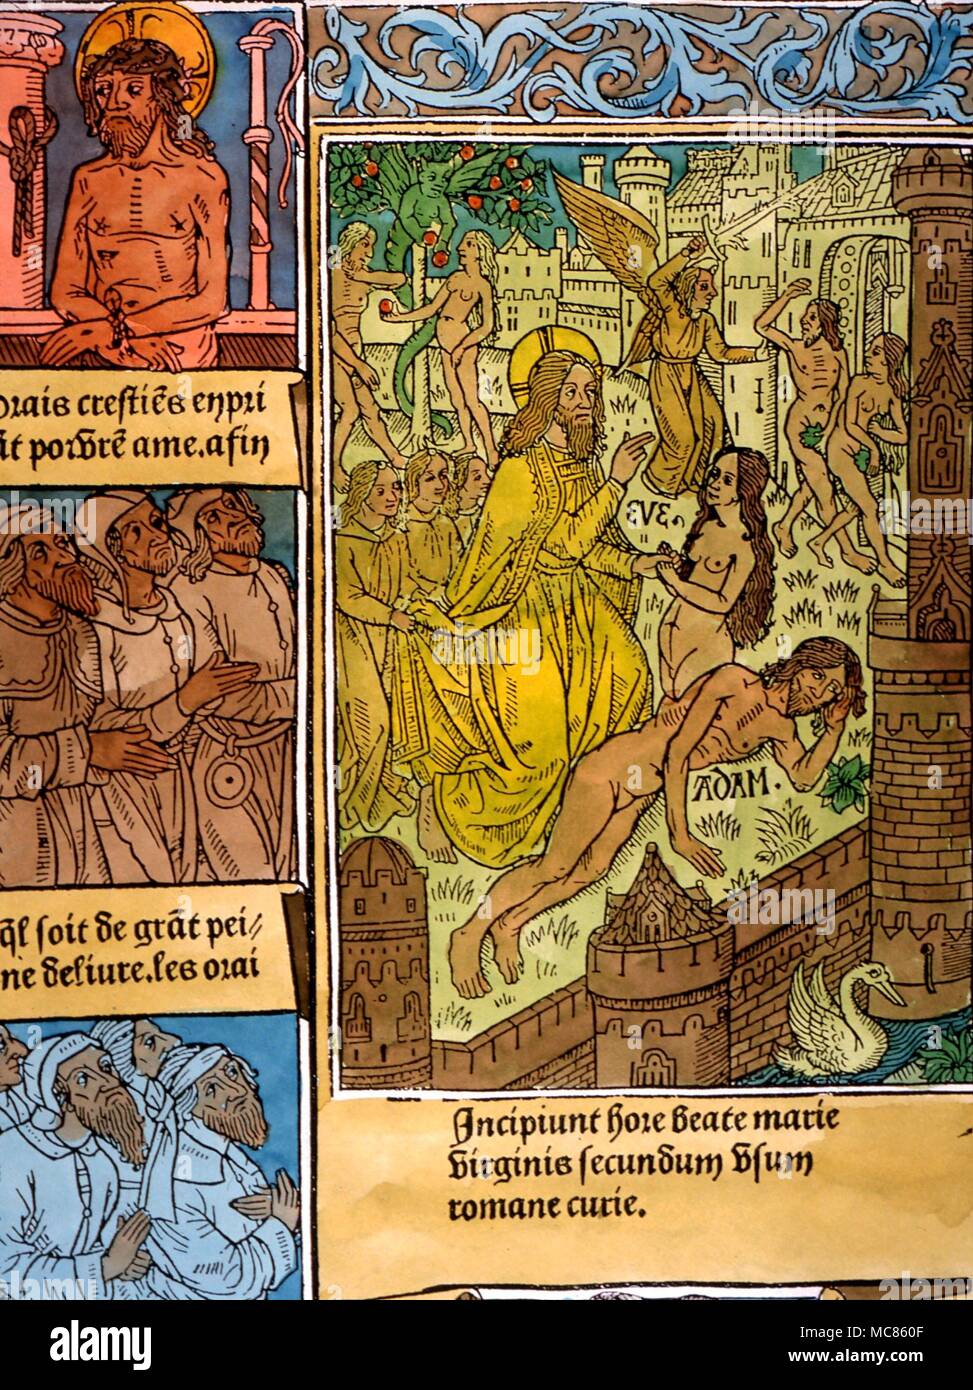 CHRISTIAN La création d'Ève à partir du corps d'Adam. Détail de gravure sur bois à partir de la Bible, vers 1510 Banque D'Images